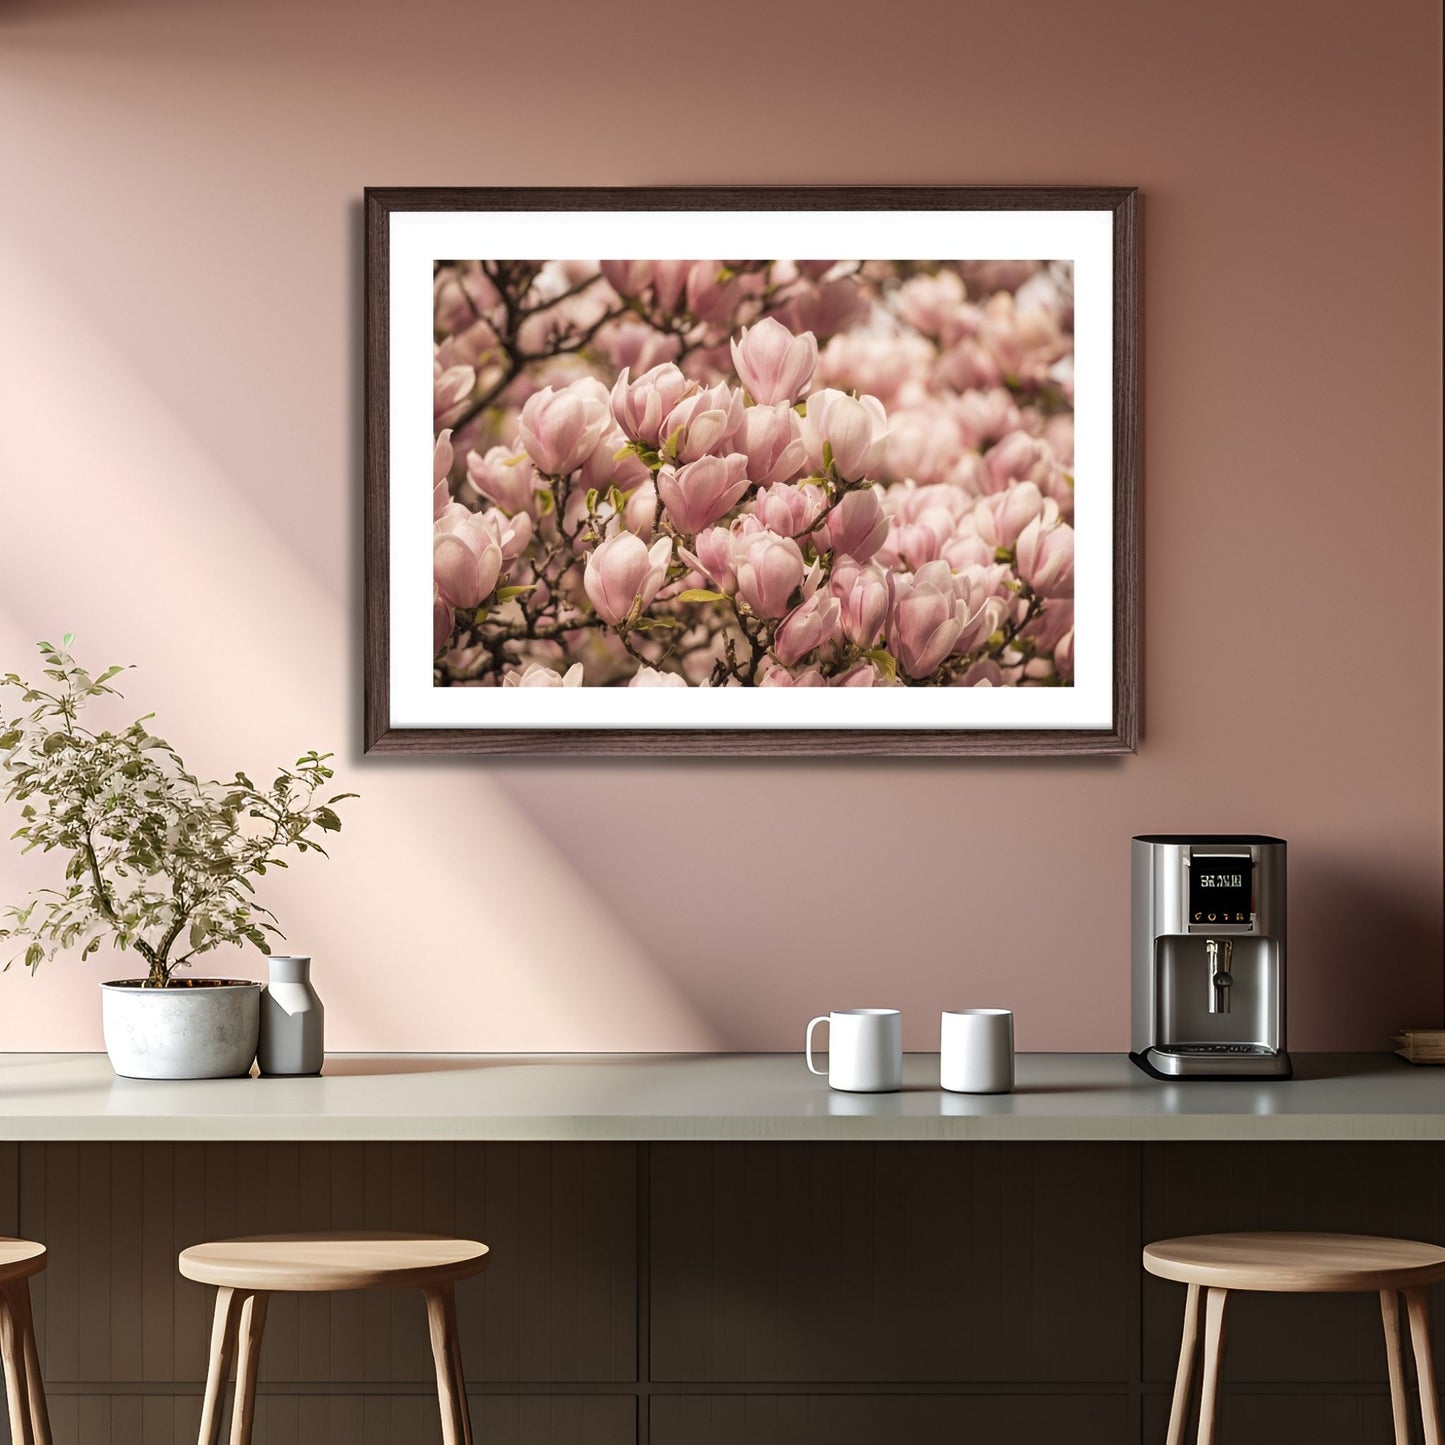 fotografi av et Magnolia tre i full blomstring, med delikate rosa blomster. Illustrasjonen viser motivet i en mørk ramme som henger over et bord.